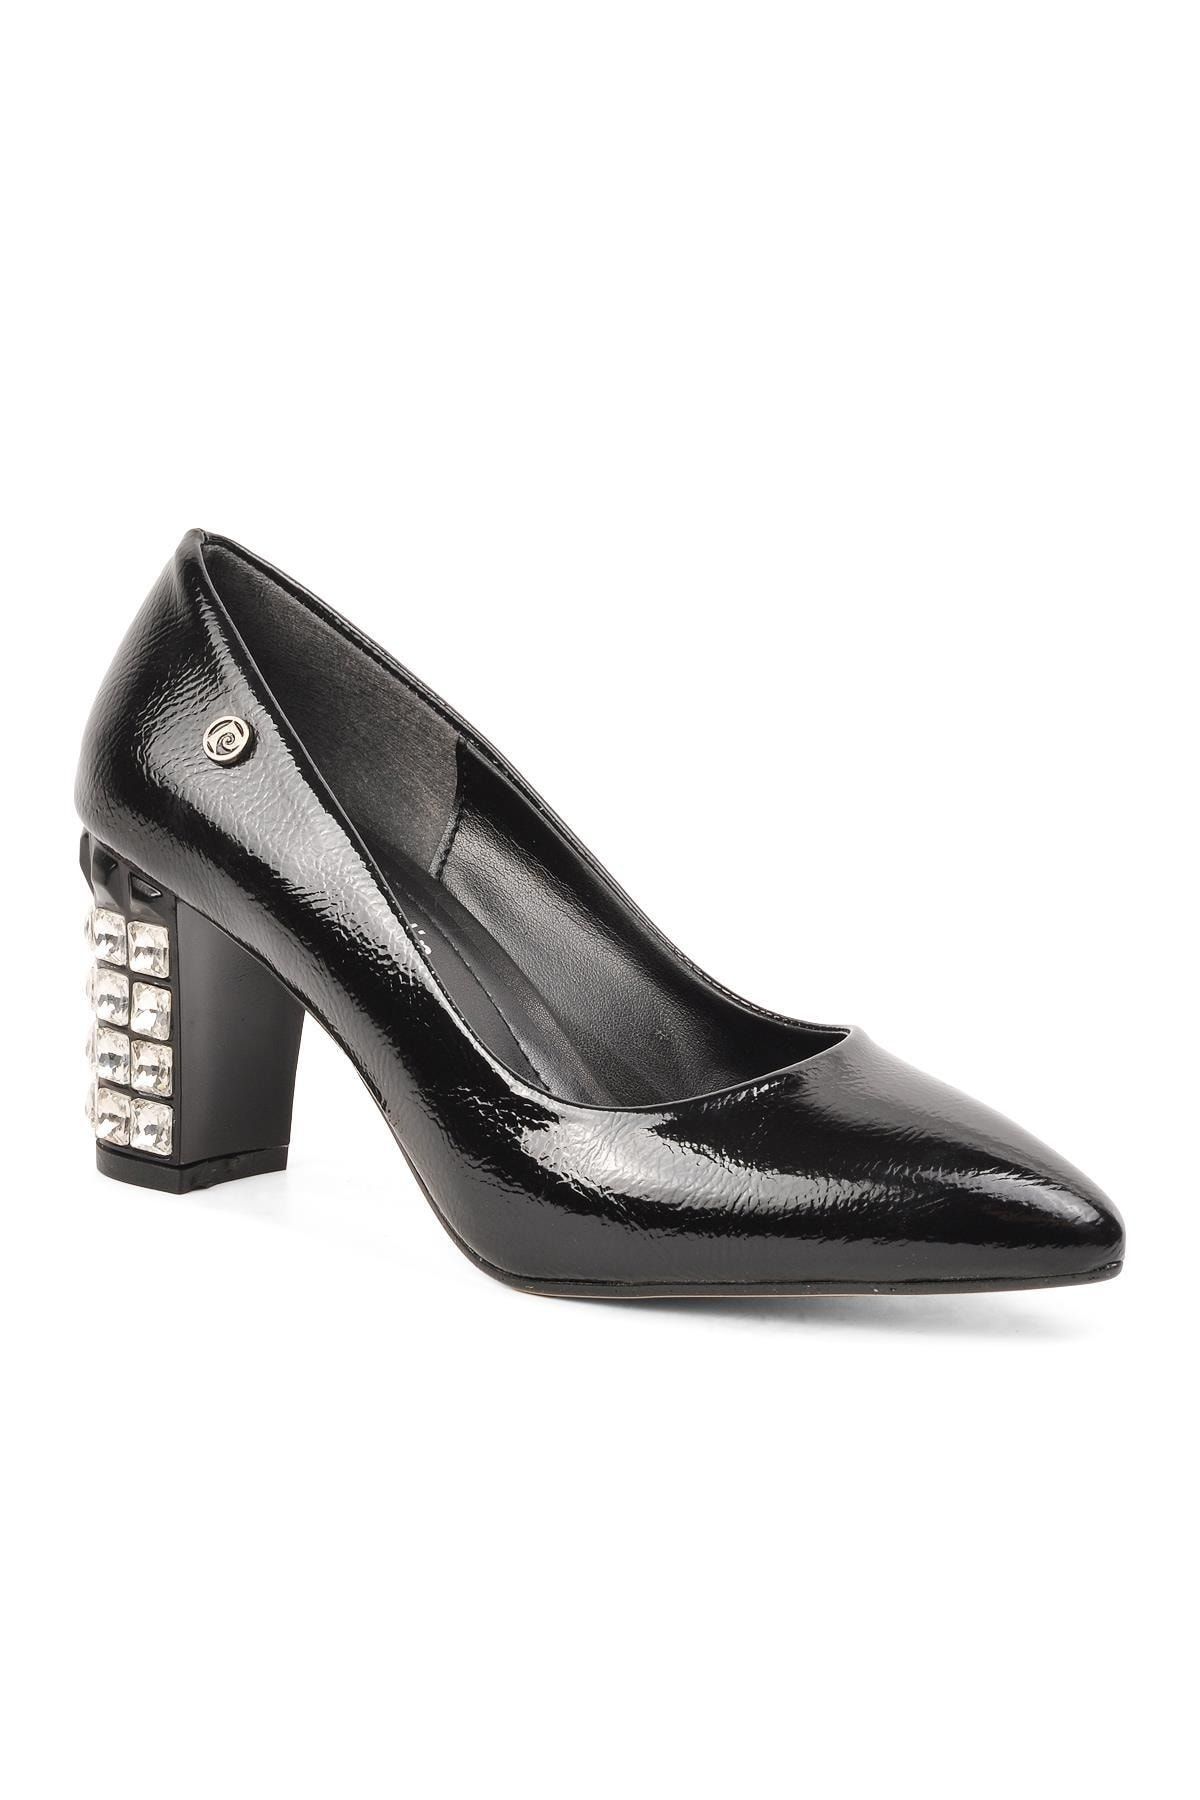 Pierre Cardin Pc-51201 Siyah Kırışık Kadın Topuklu Ayakkabı